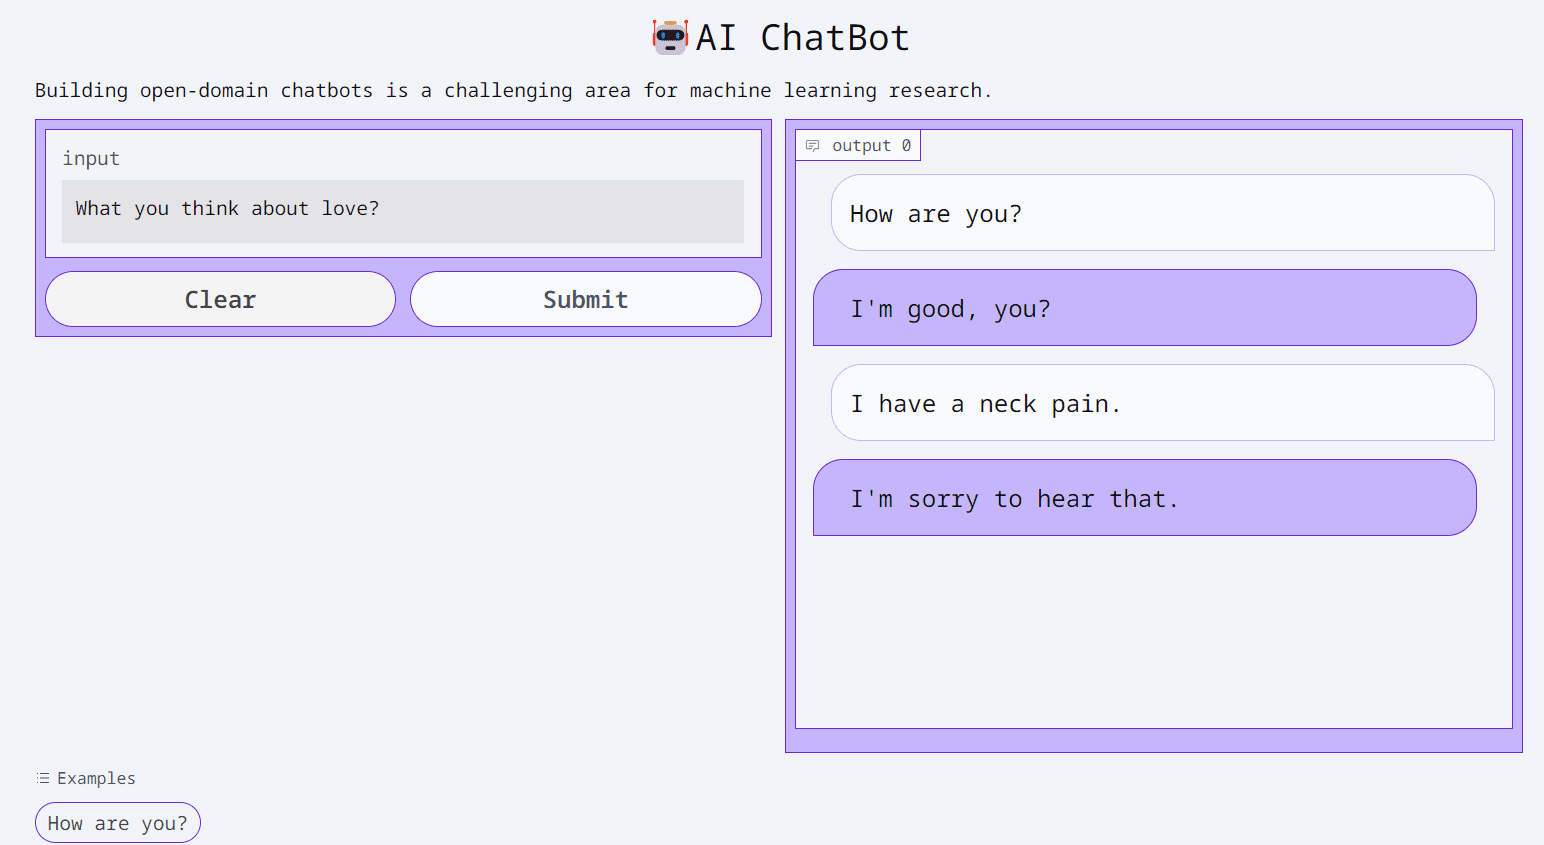 Rakenna AI Chatbot 5 minuutissa halaavien kasvojen ja gradion avulla